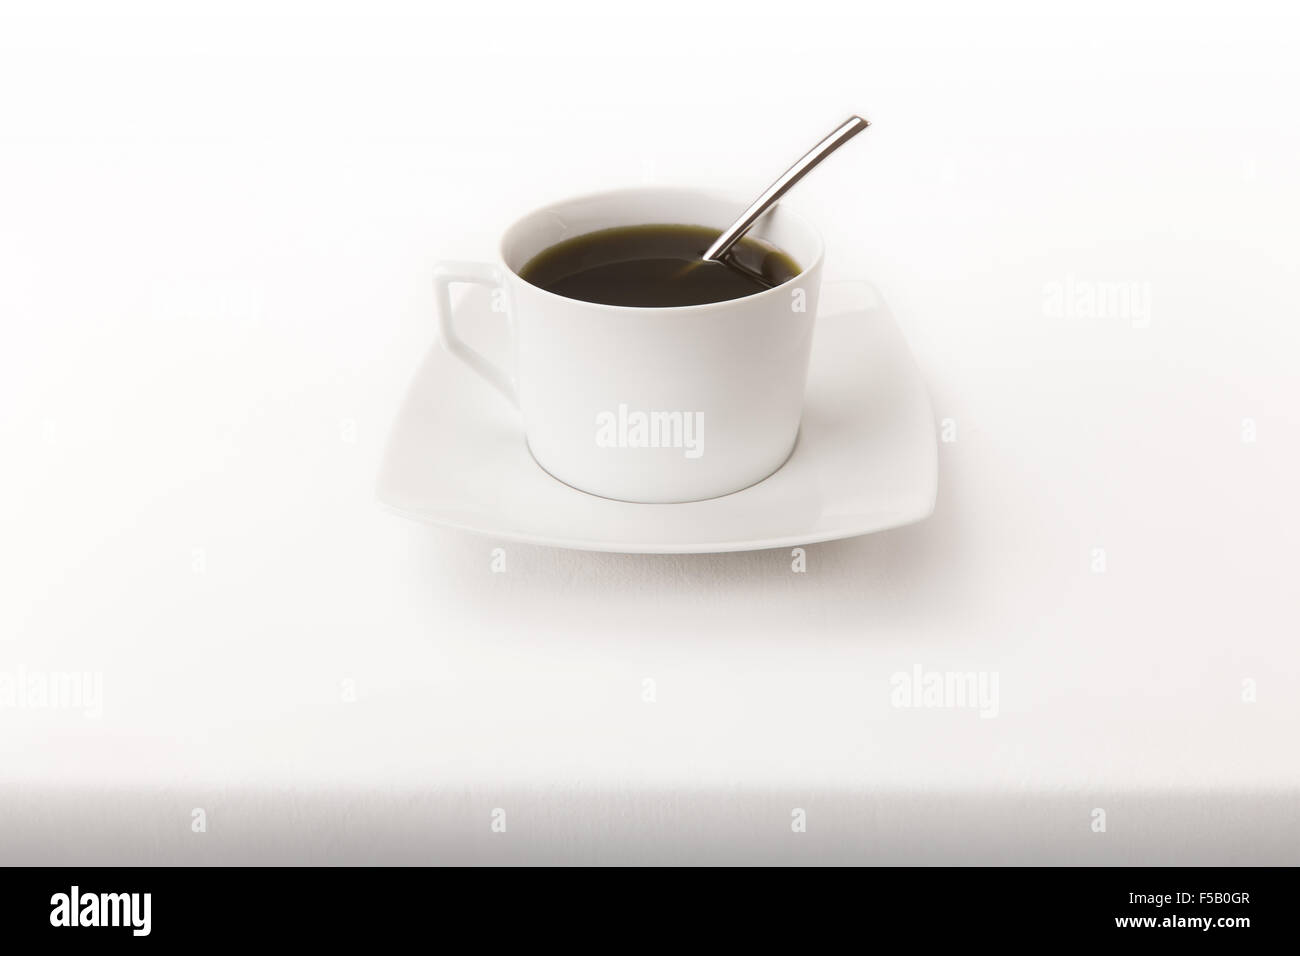 Une tasse de thé avec une cuillère sur une nappe blanche avec du vrai ombre bas Banque D'Images